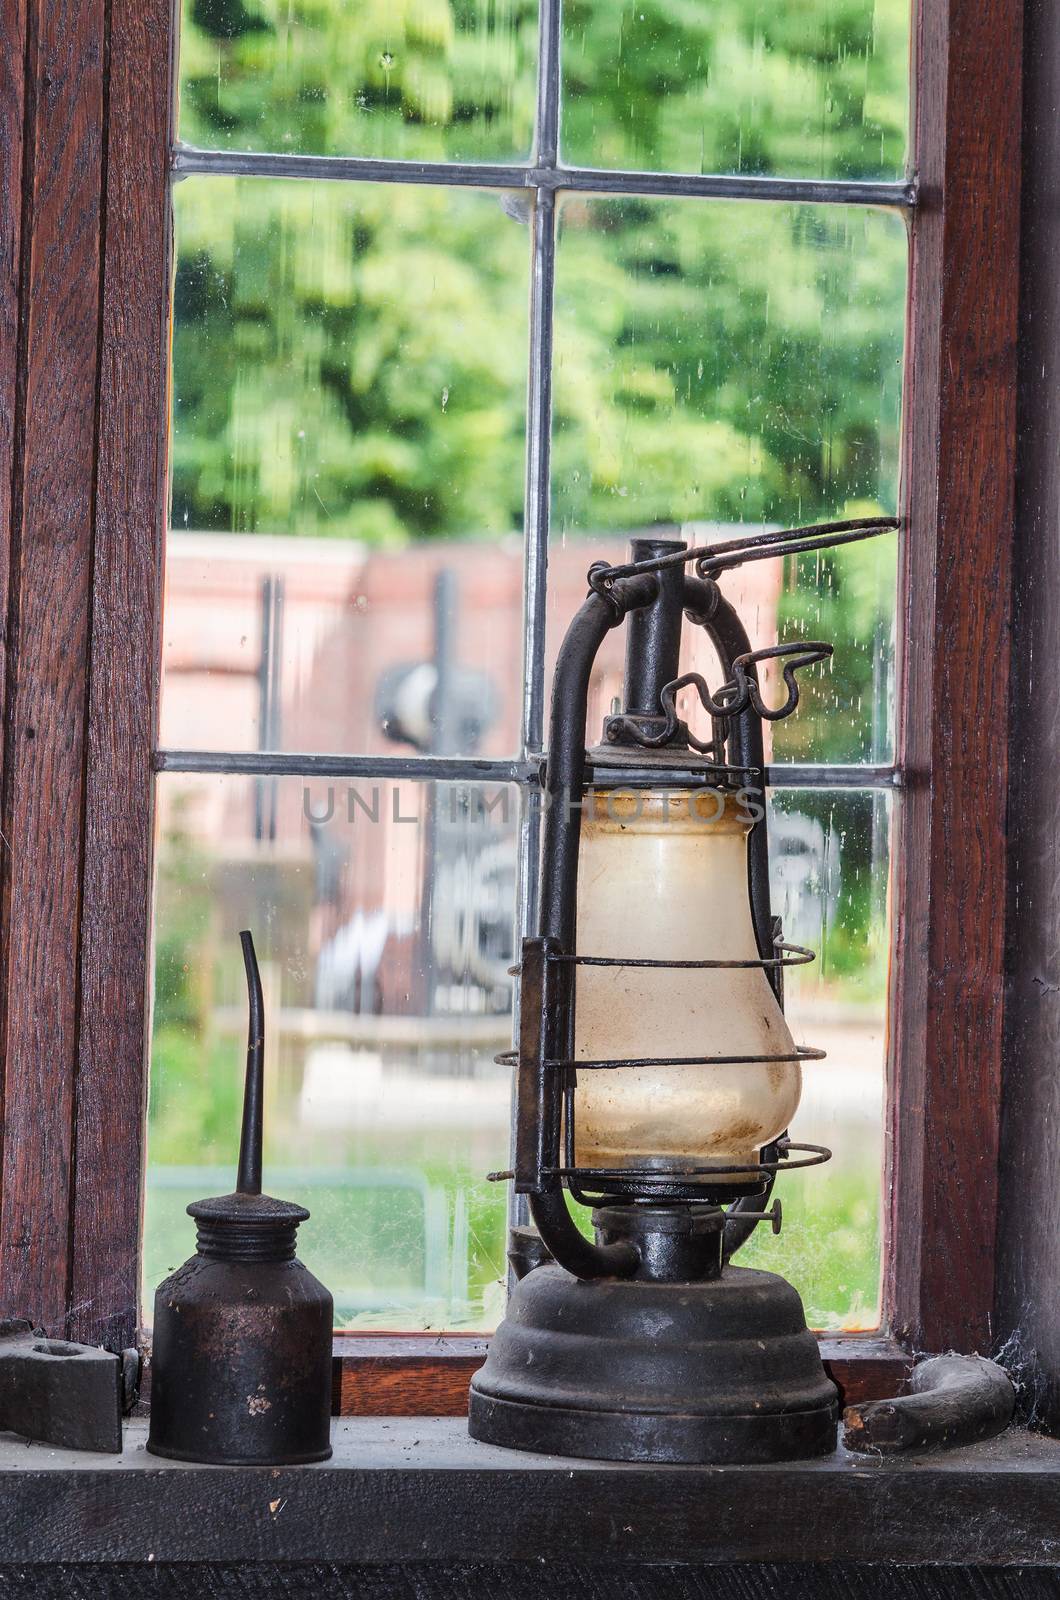 Old kerosene lamp on a window sill    by JFsPic